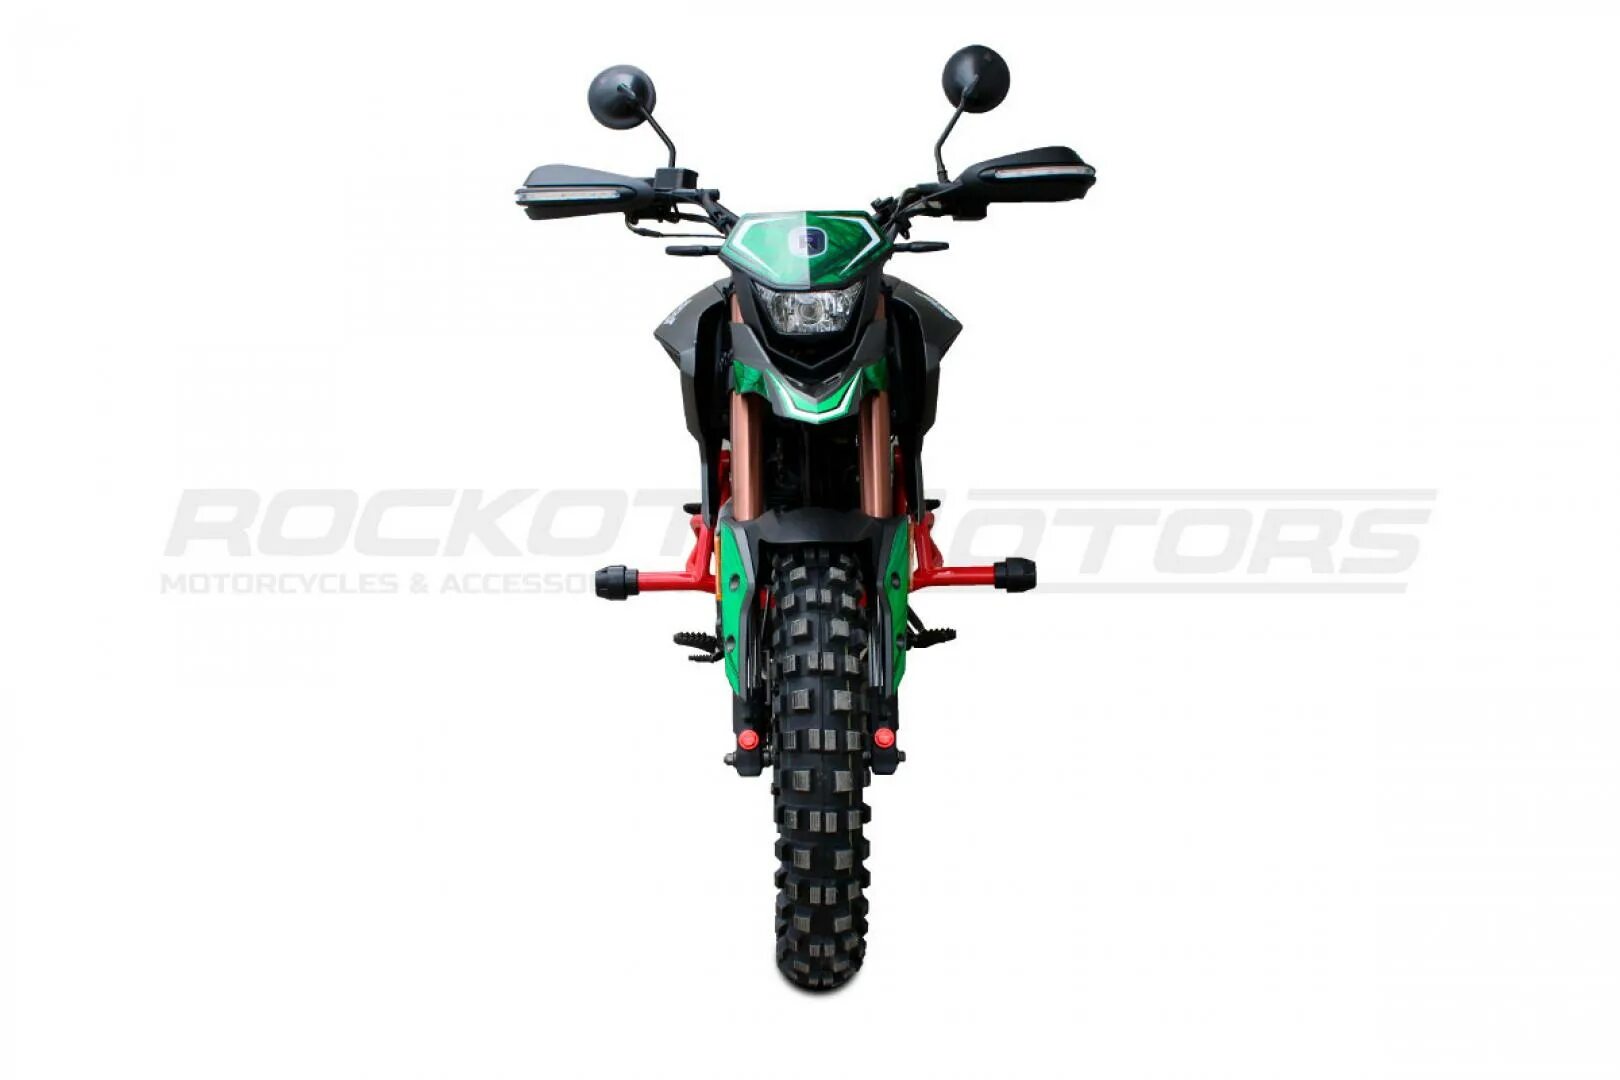 Мотоцикл Rockot Hound Offroad 250 Lux. Rockot Hound 250 Lux. Мотоцикл турэндуро Rockot Hound 250 Lux. Мотоцикл Rockot Hound Offroad 250 (зеленый).